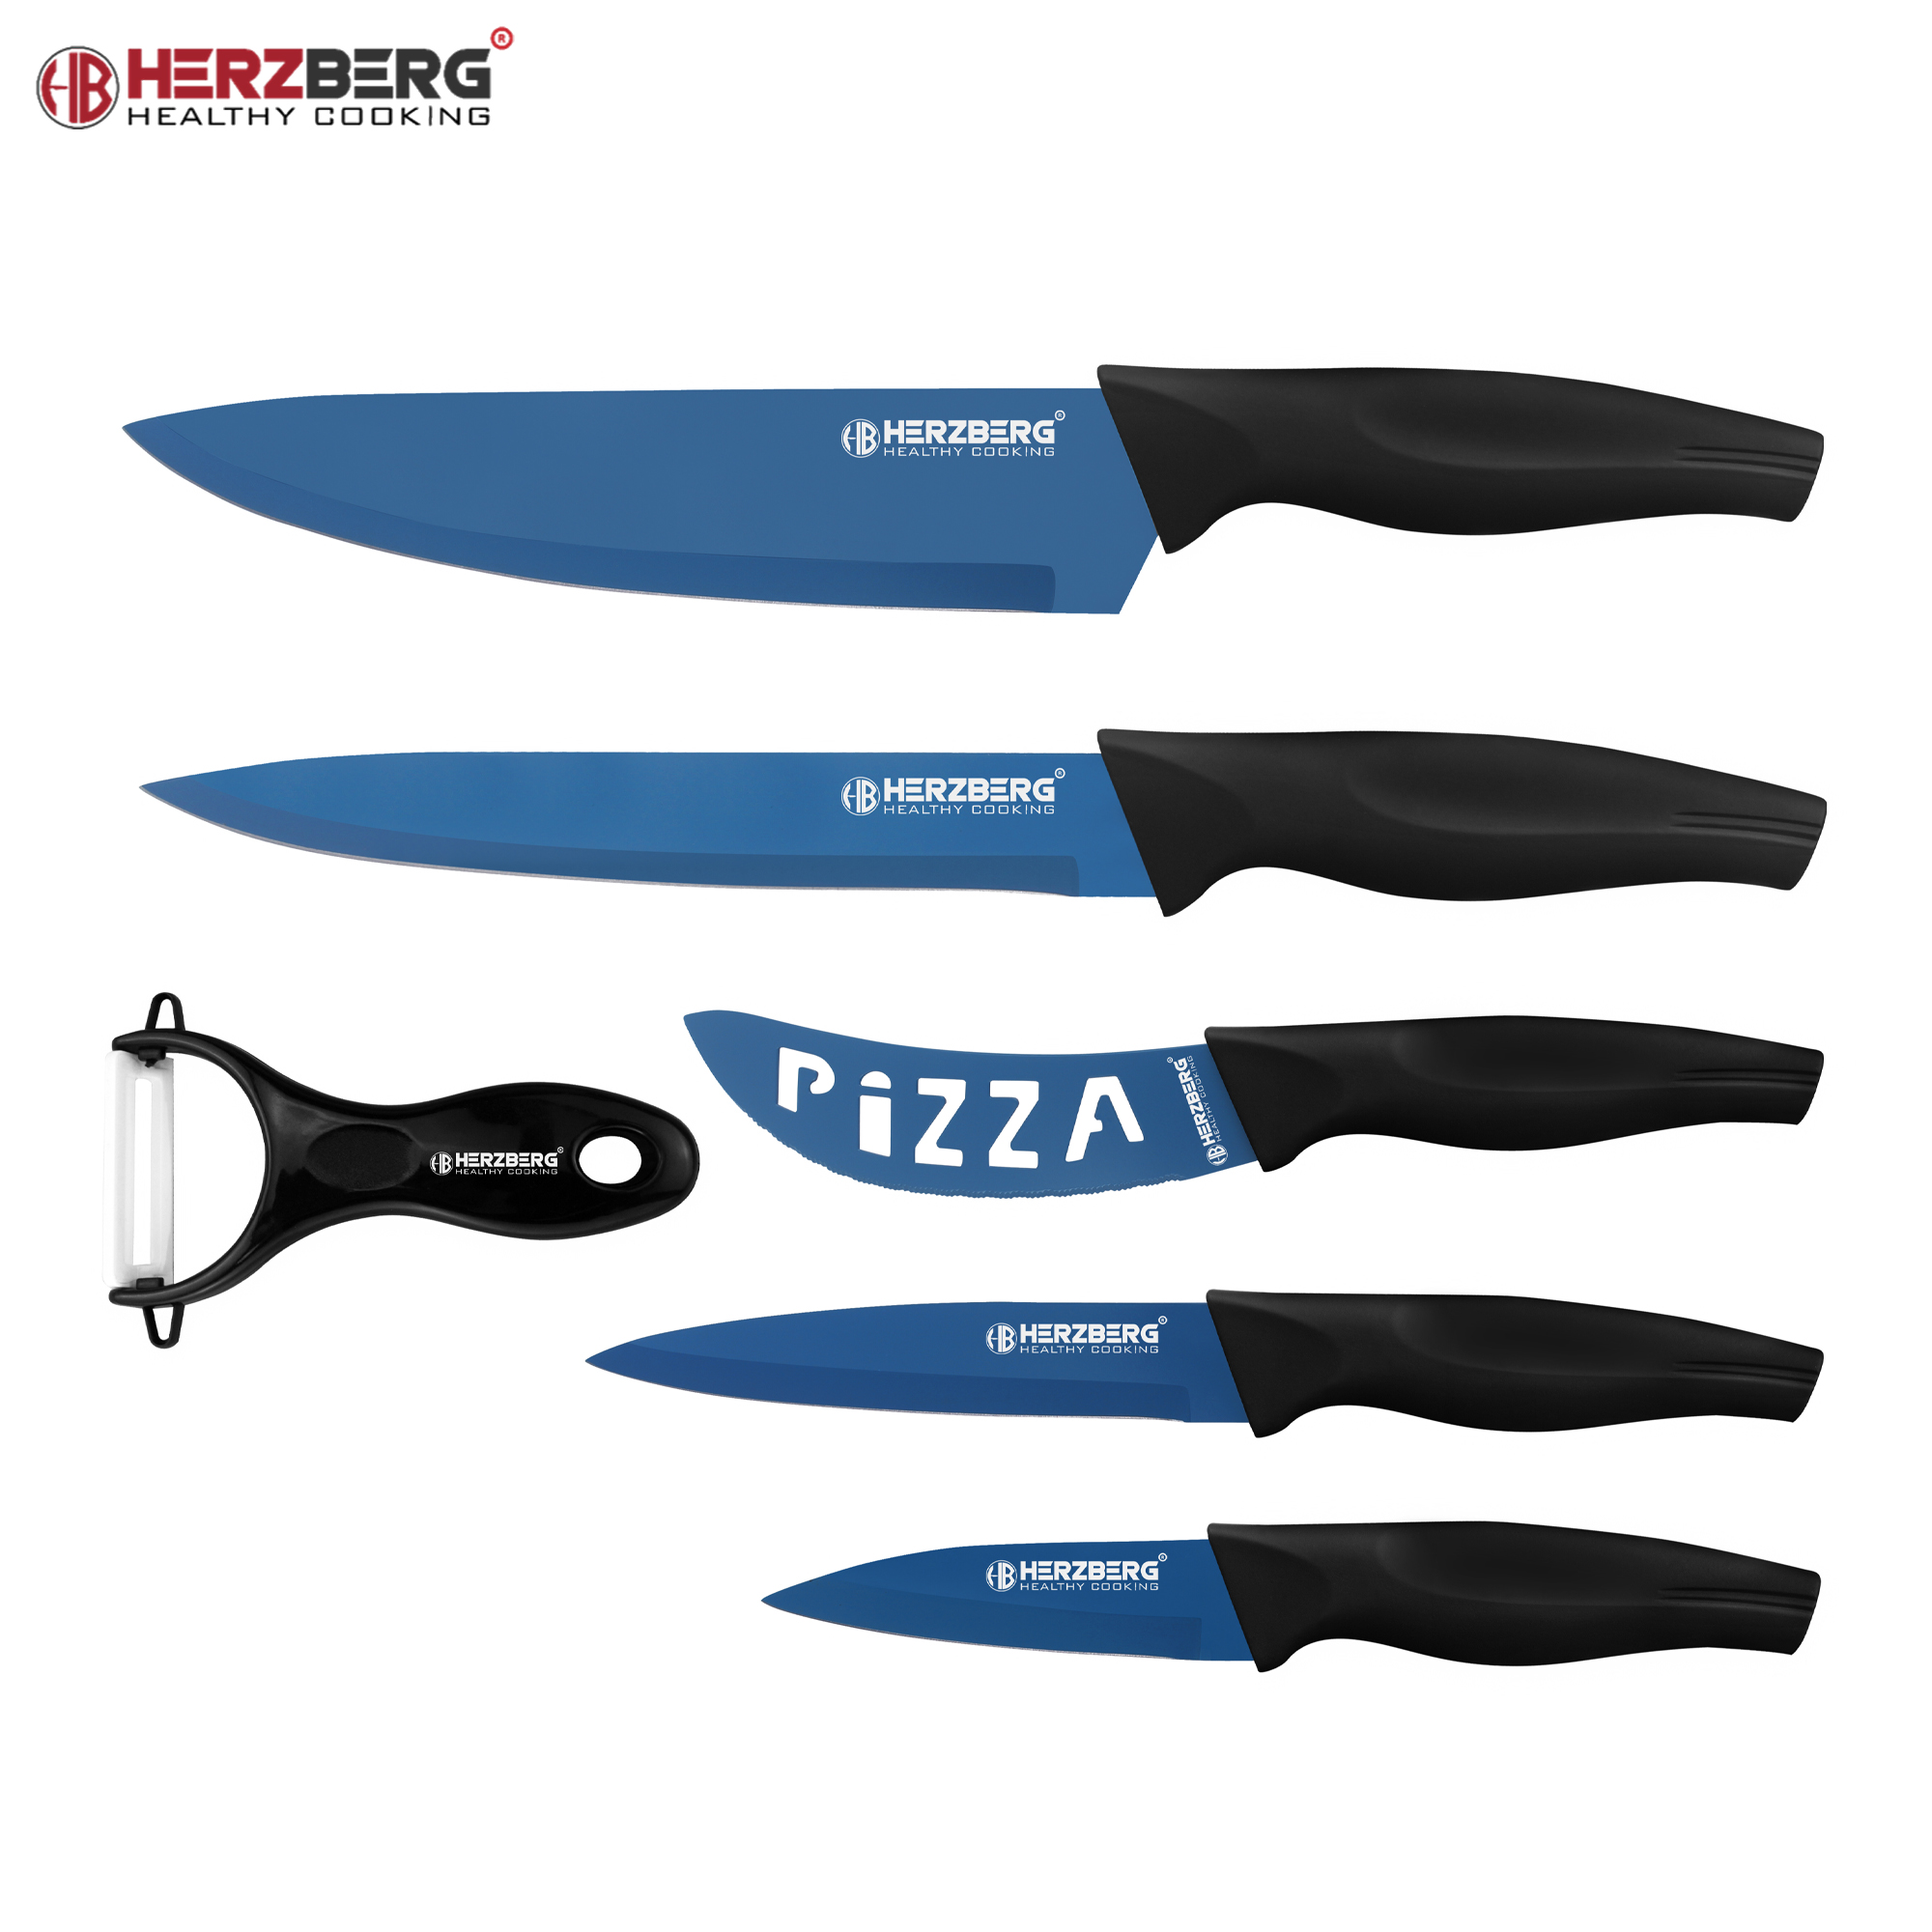 Herzberg HG-KL6BLU: Juego de cuchillos con revestimiento de mármol de 5 piezas - Azul